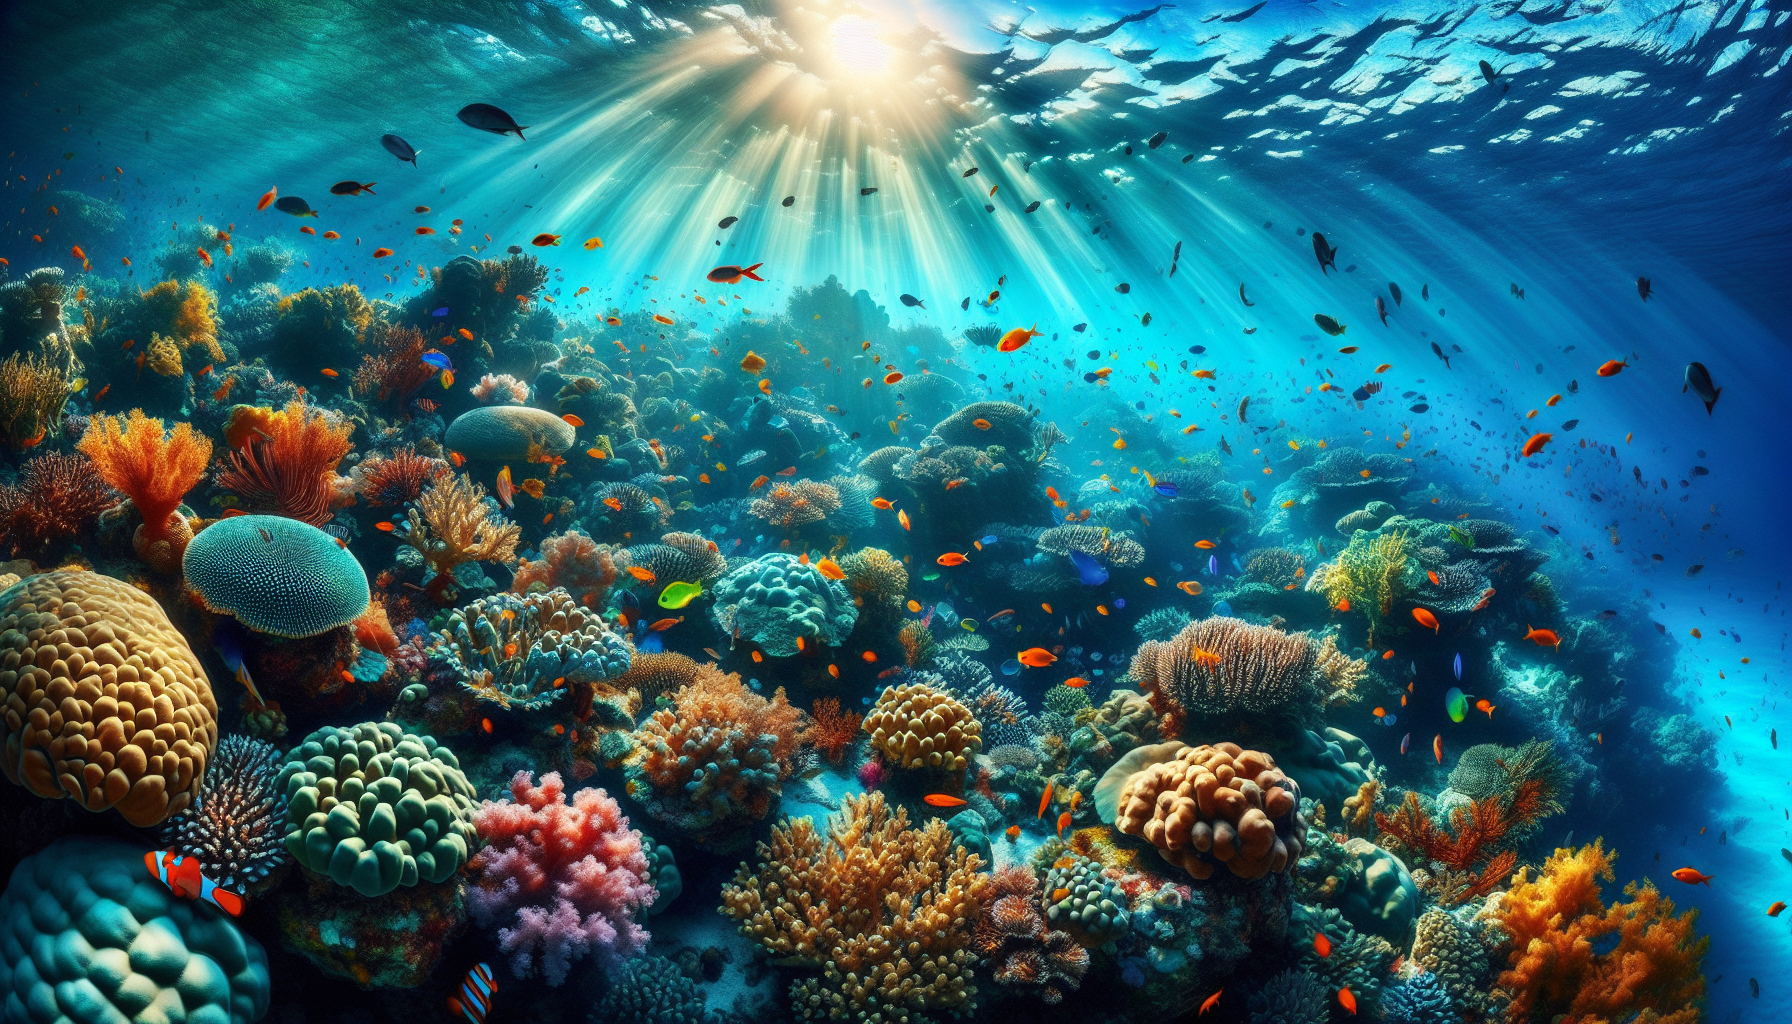 Rạn san hô là một điểm đến du lịch vô cùng hấp dẫn với cảnh quan tuyệt đẹp và sự đa dạng sinh học phong phú.